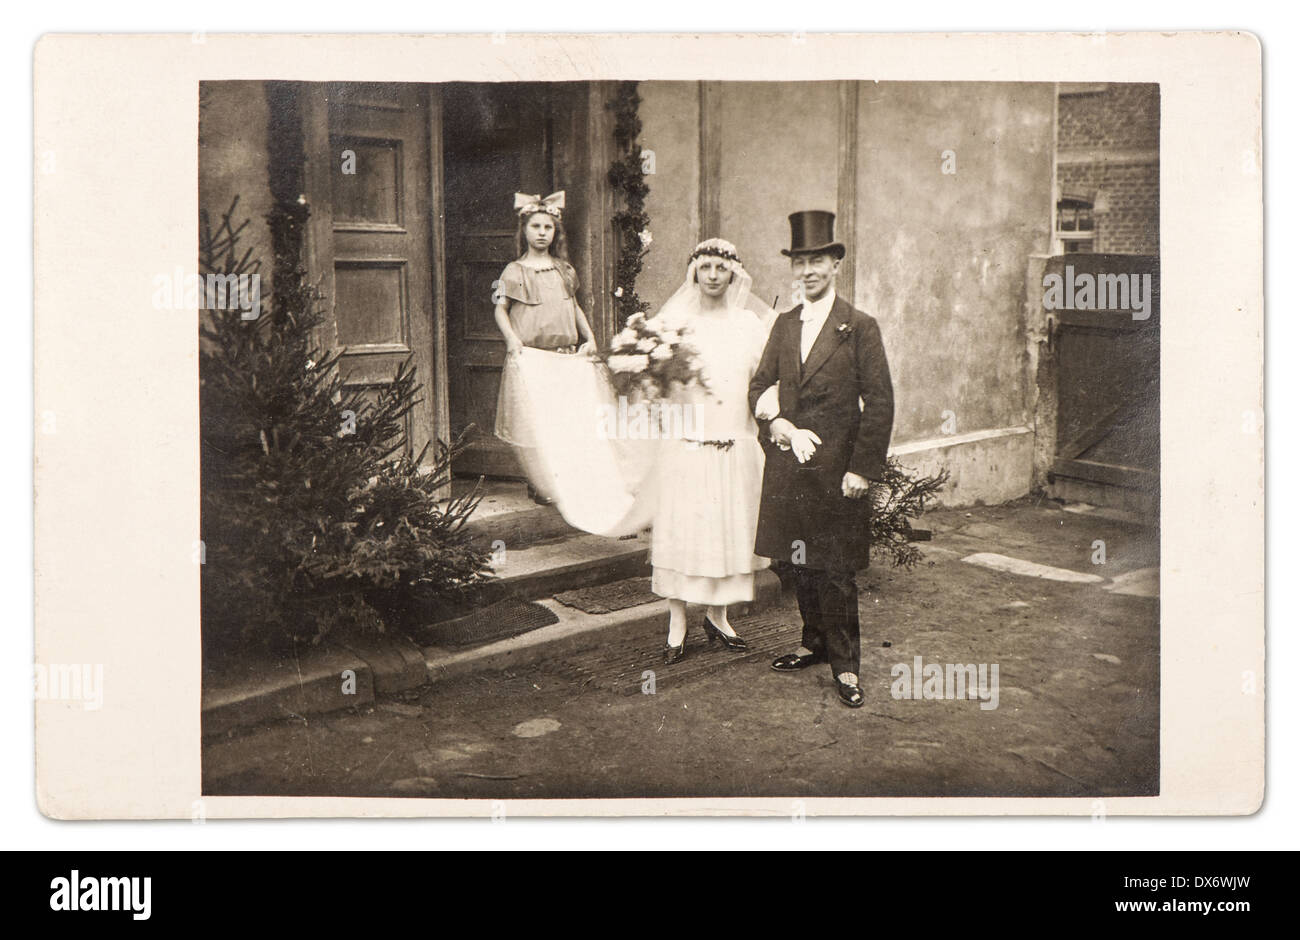 Berlino, Germania - circa 1910: appena una coppia sposata. vintage wedding photo da circa 1910 a Berlino, Germania Foto Stock